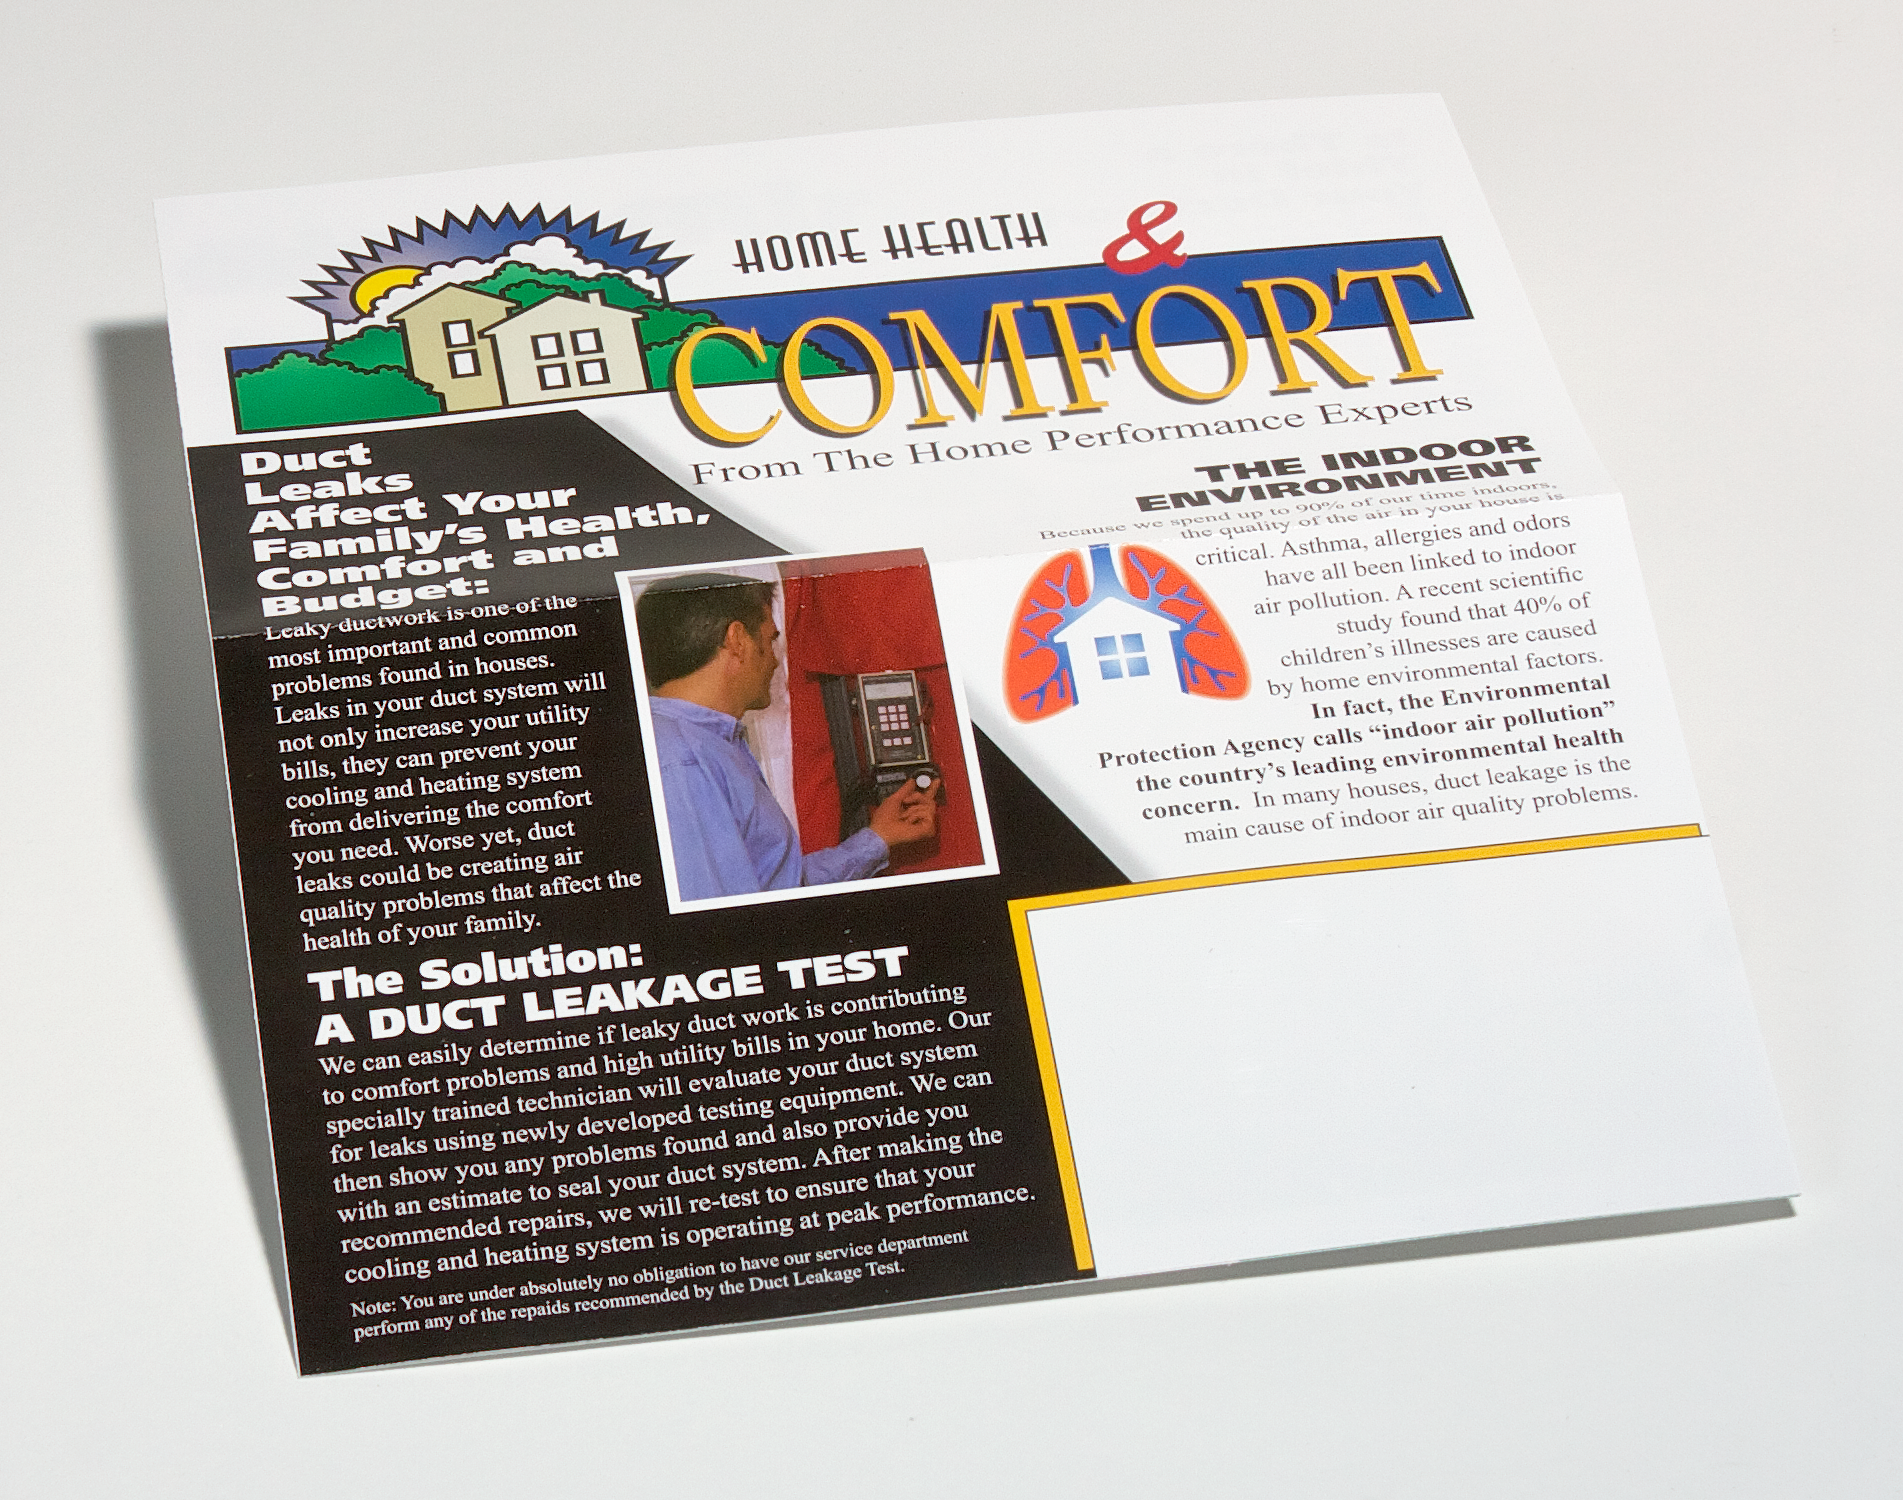 Home Health & Comfort Brochure Image